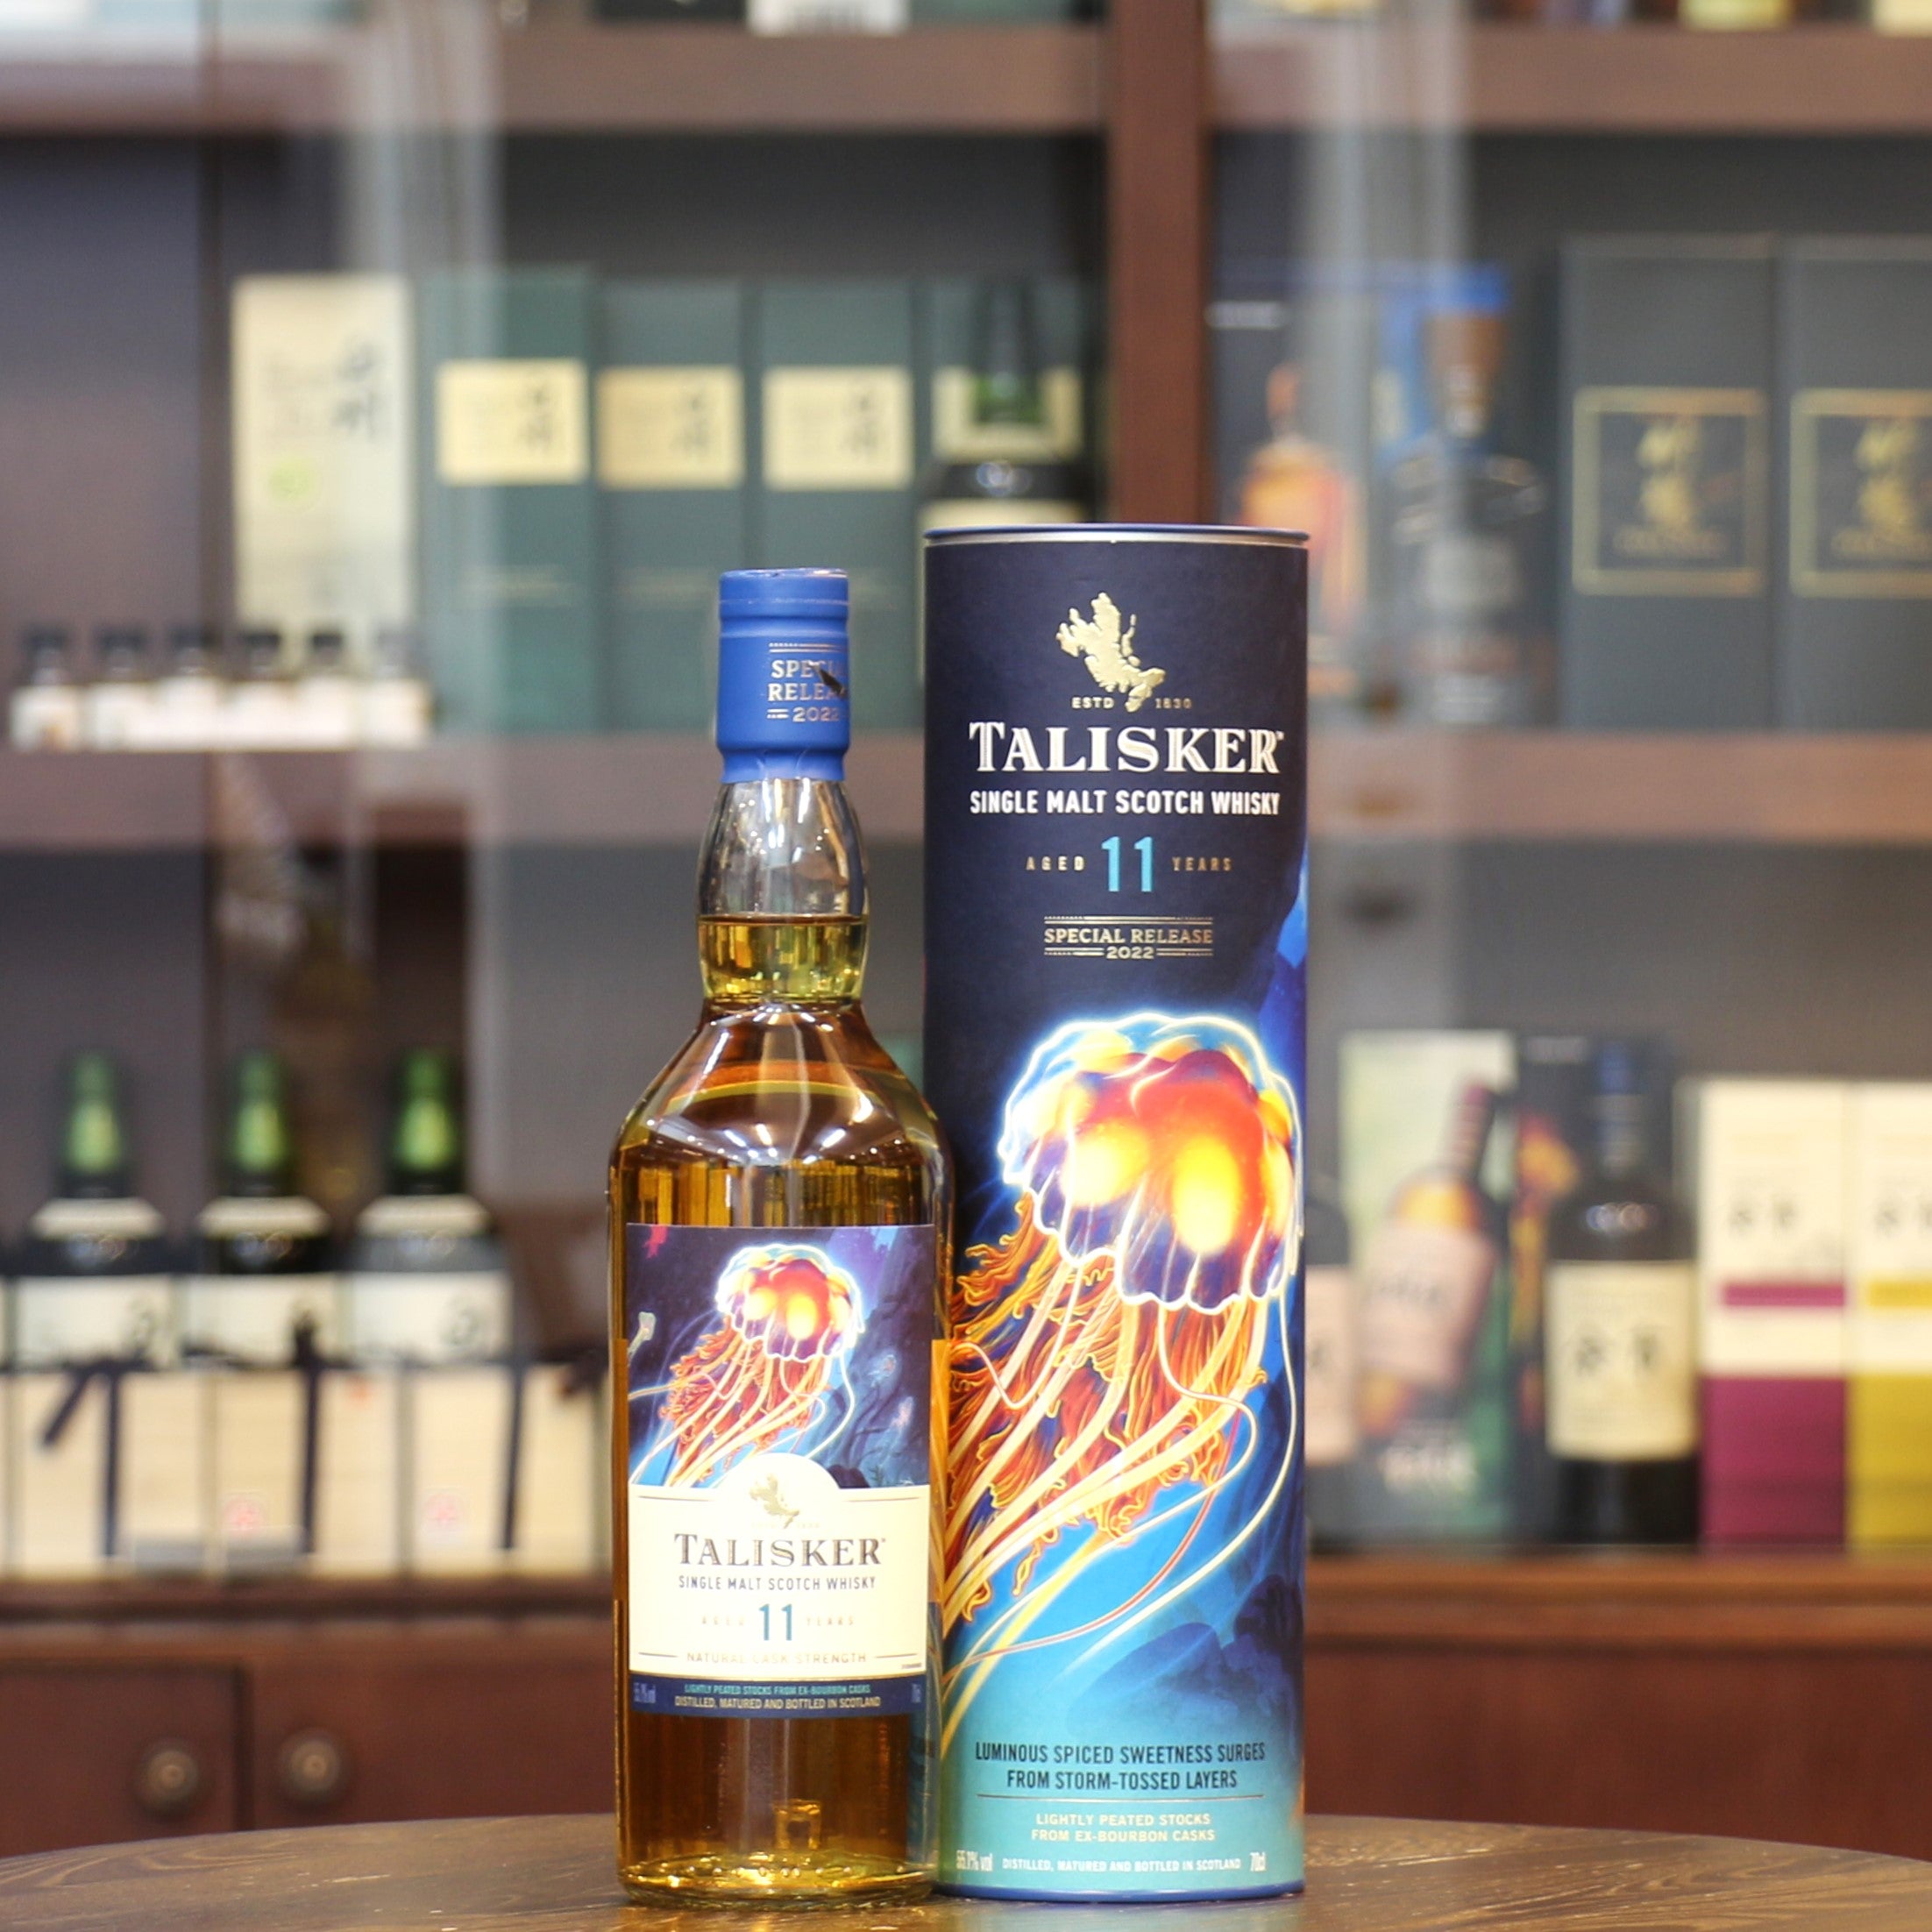 Talisker 11 年 2022 年特別發行單一麥芽蘇格蘭威士忌